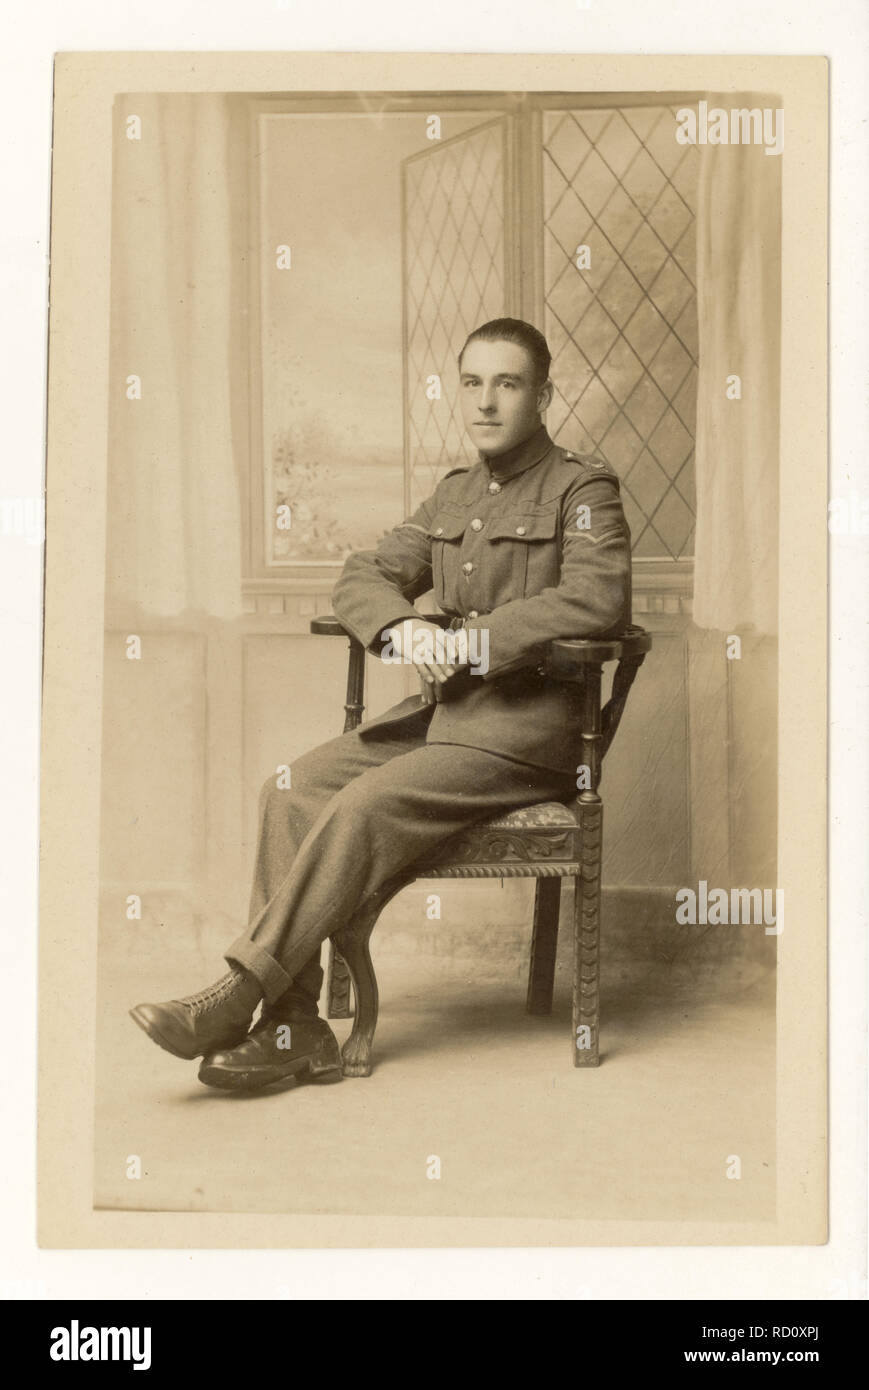 WW1 Ära Postkarte studio Portrait von jungen Soldaten in Uniform namens Percy, vom 10. November 1917, Großbritannien Stockfoto